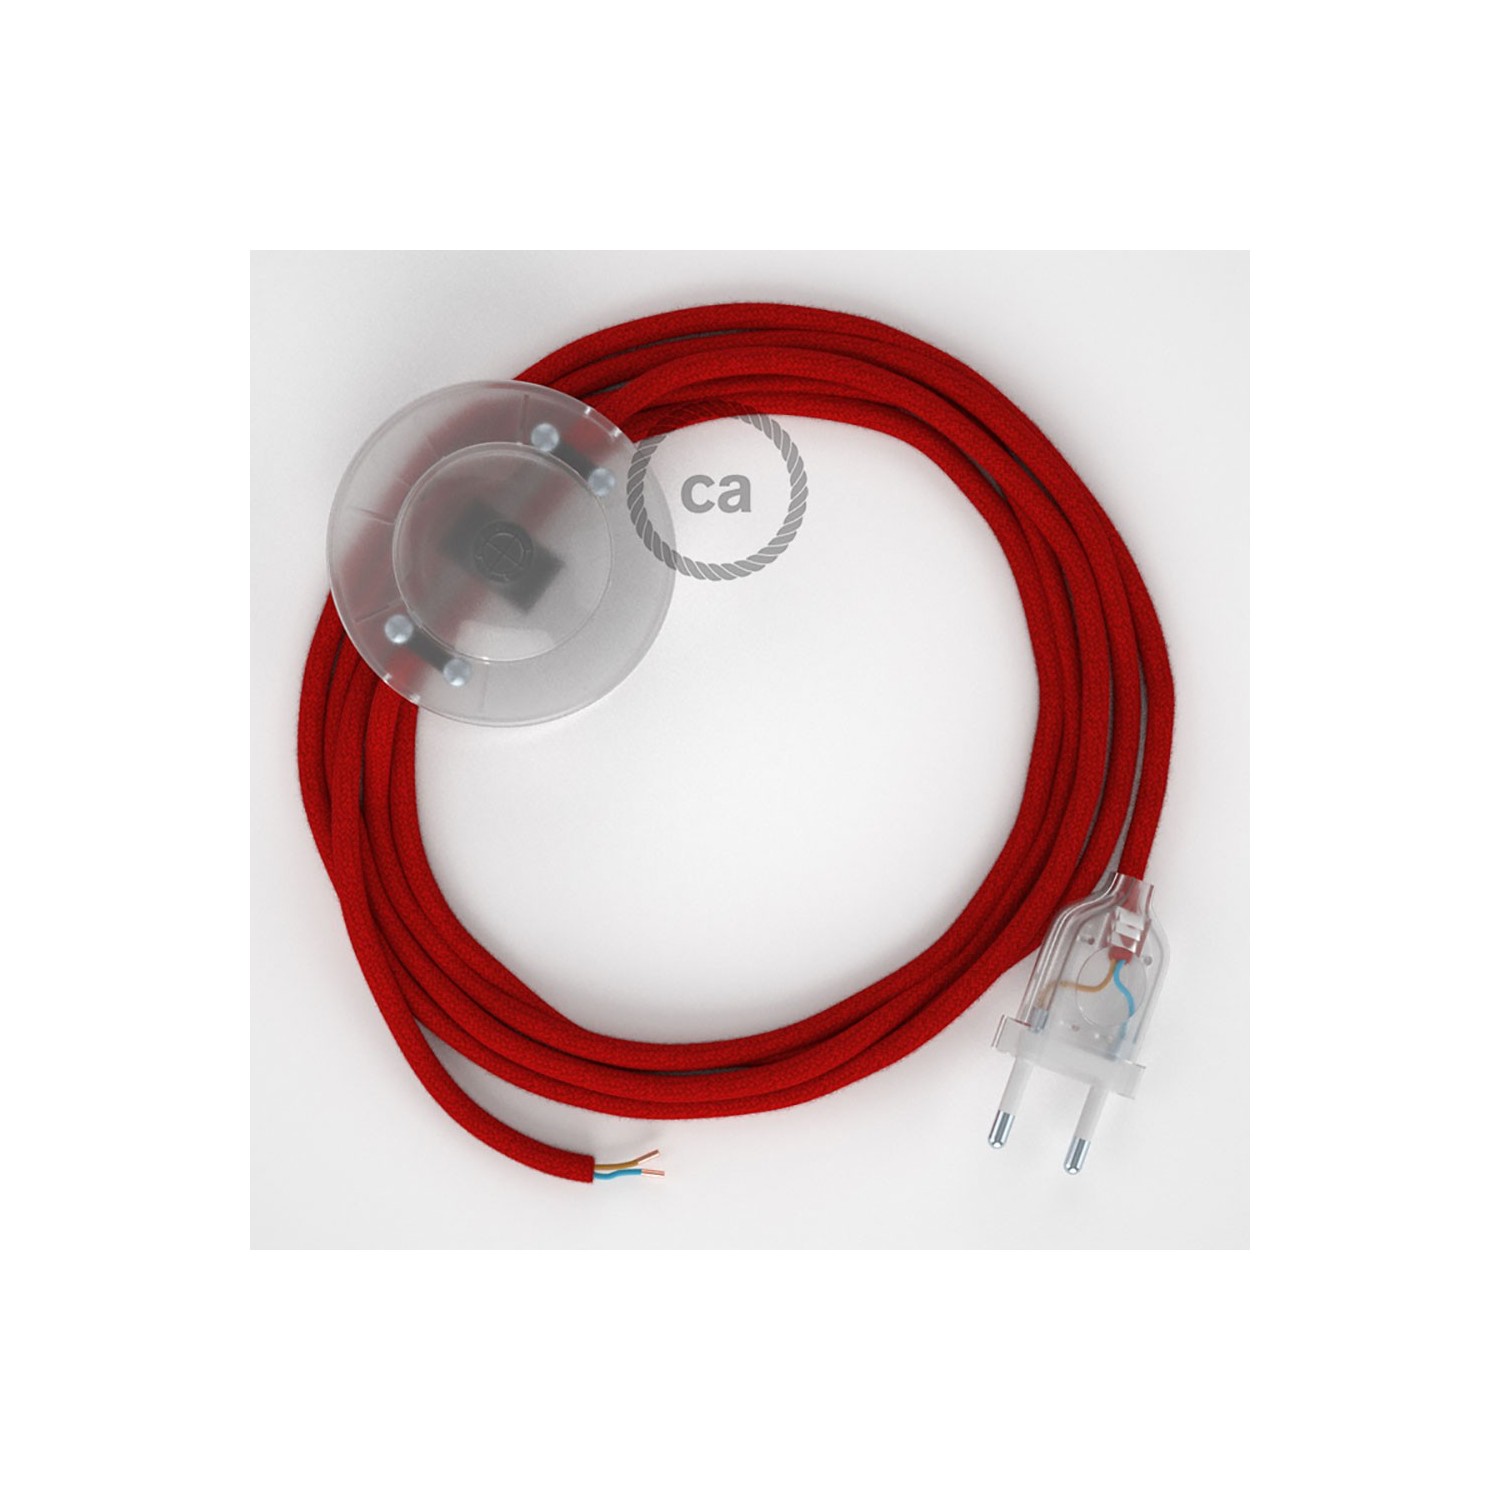 Cordon pour lampadaire, câble RC35 Coton Rouge Feu 3 m. Choisissez la couleur de la fiche et de l'interrupteur!